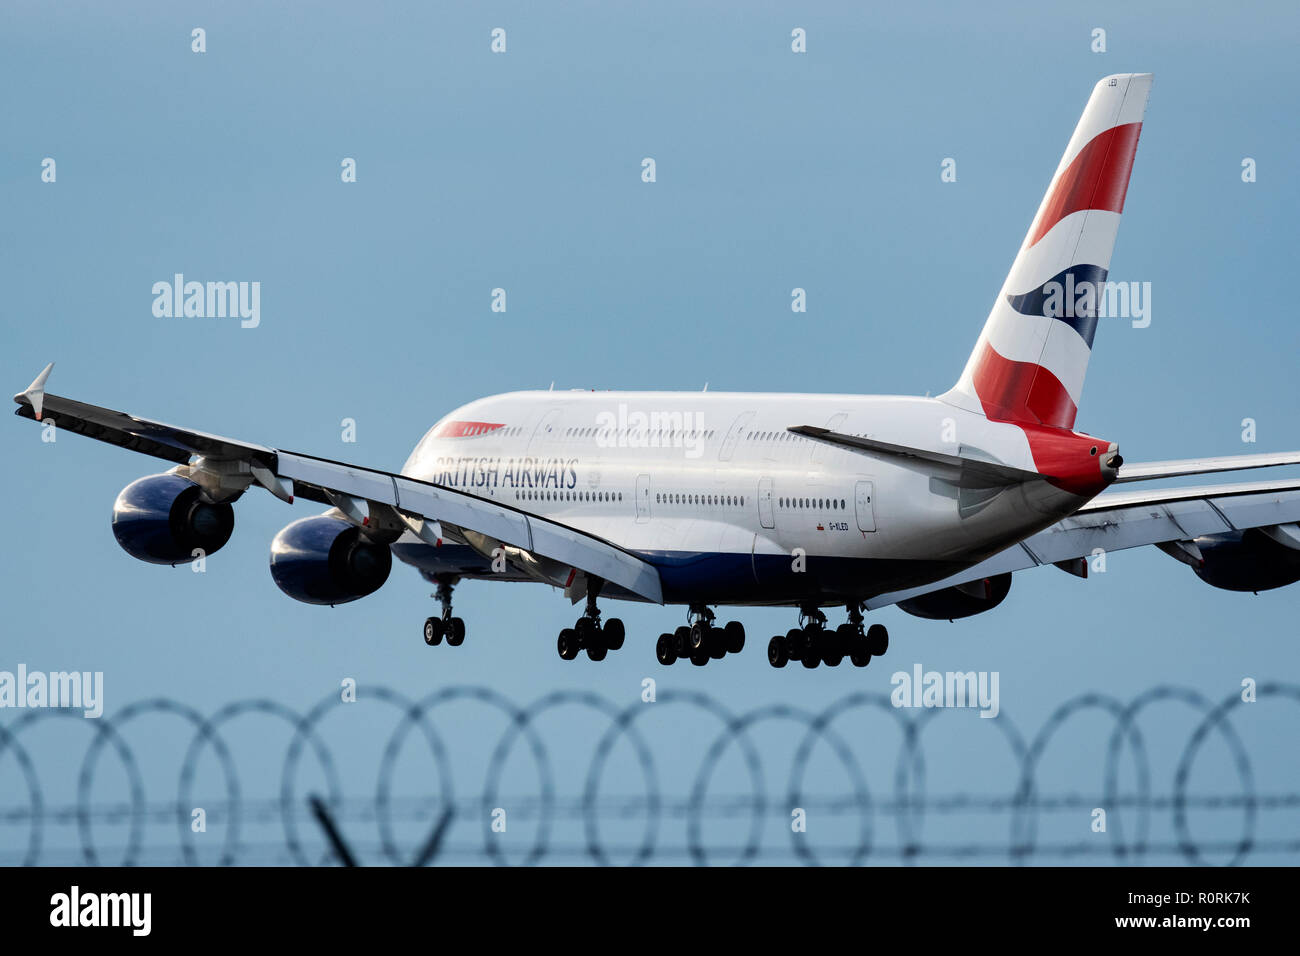 British Airways avion Airbus A380 avion avion avion de ligne à réaction landing Banque D'Images